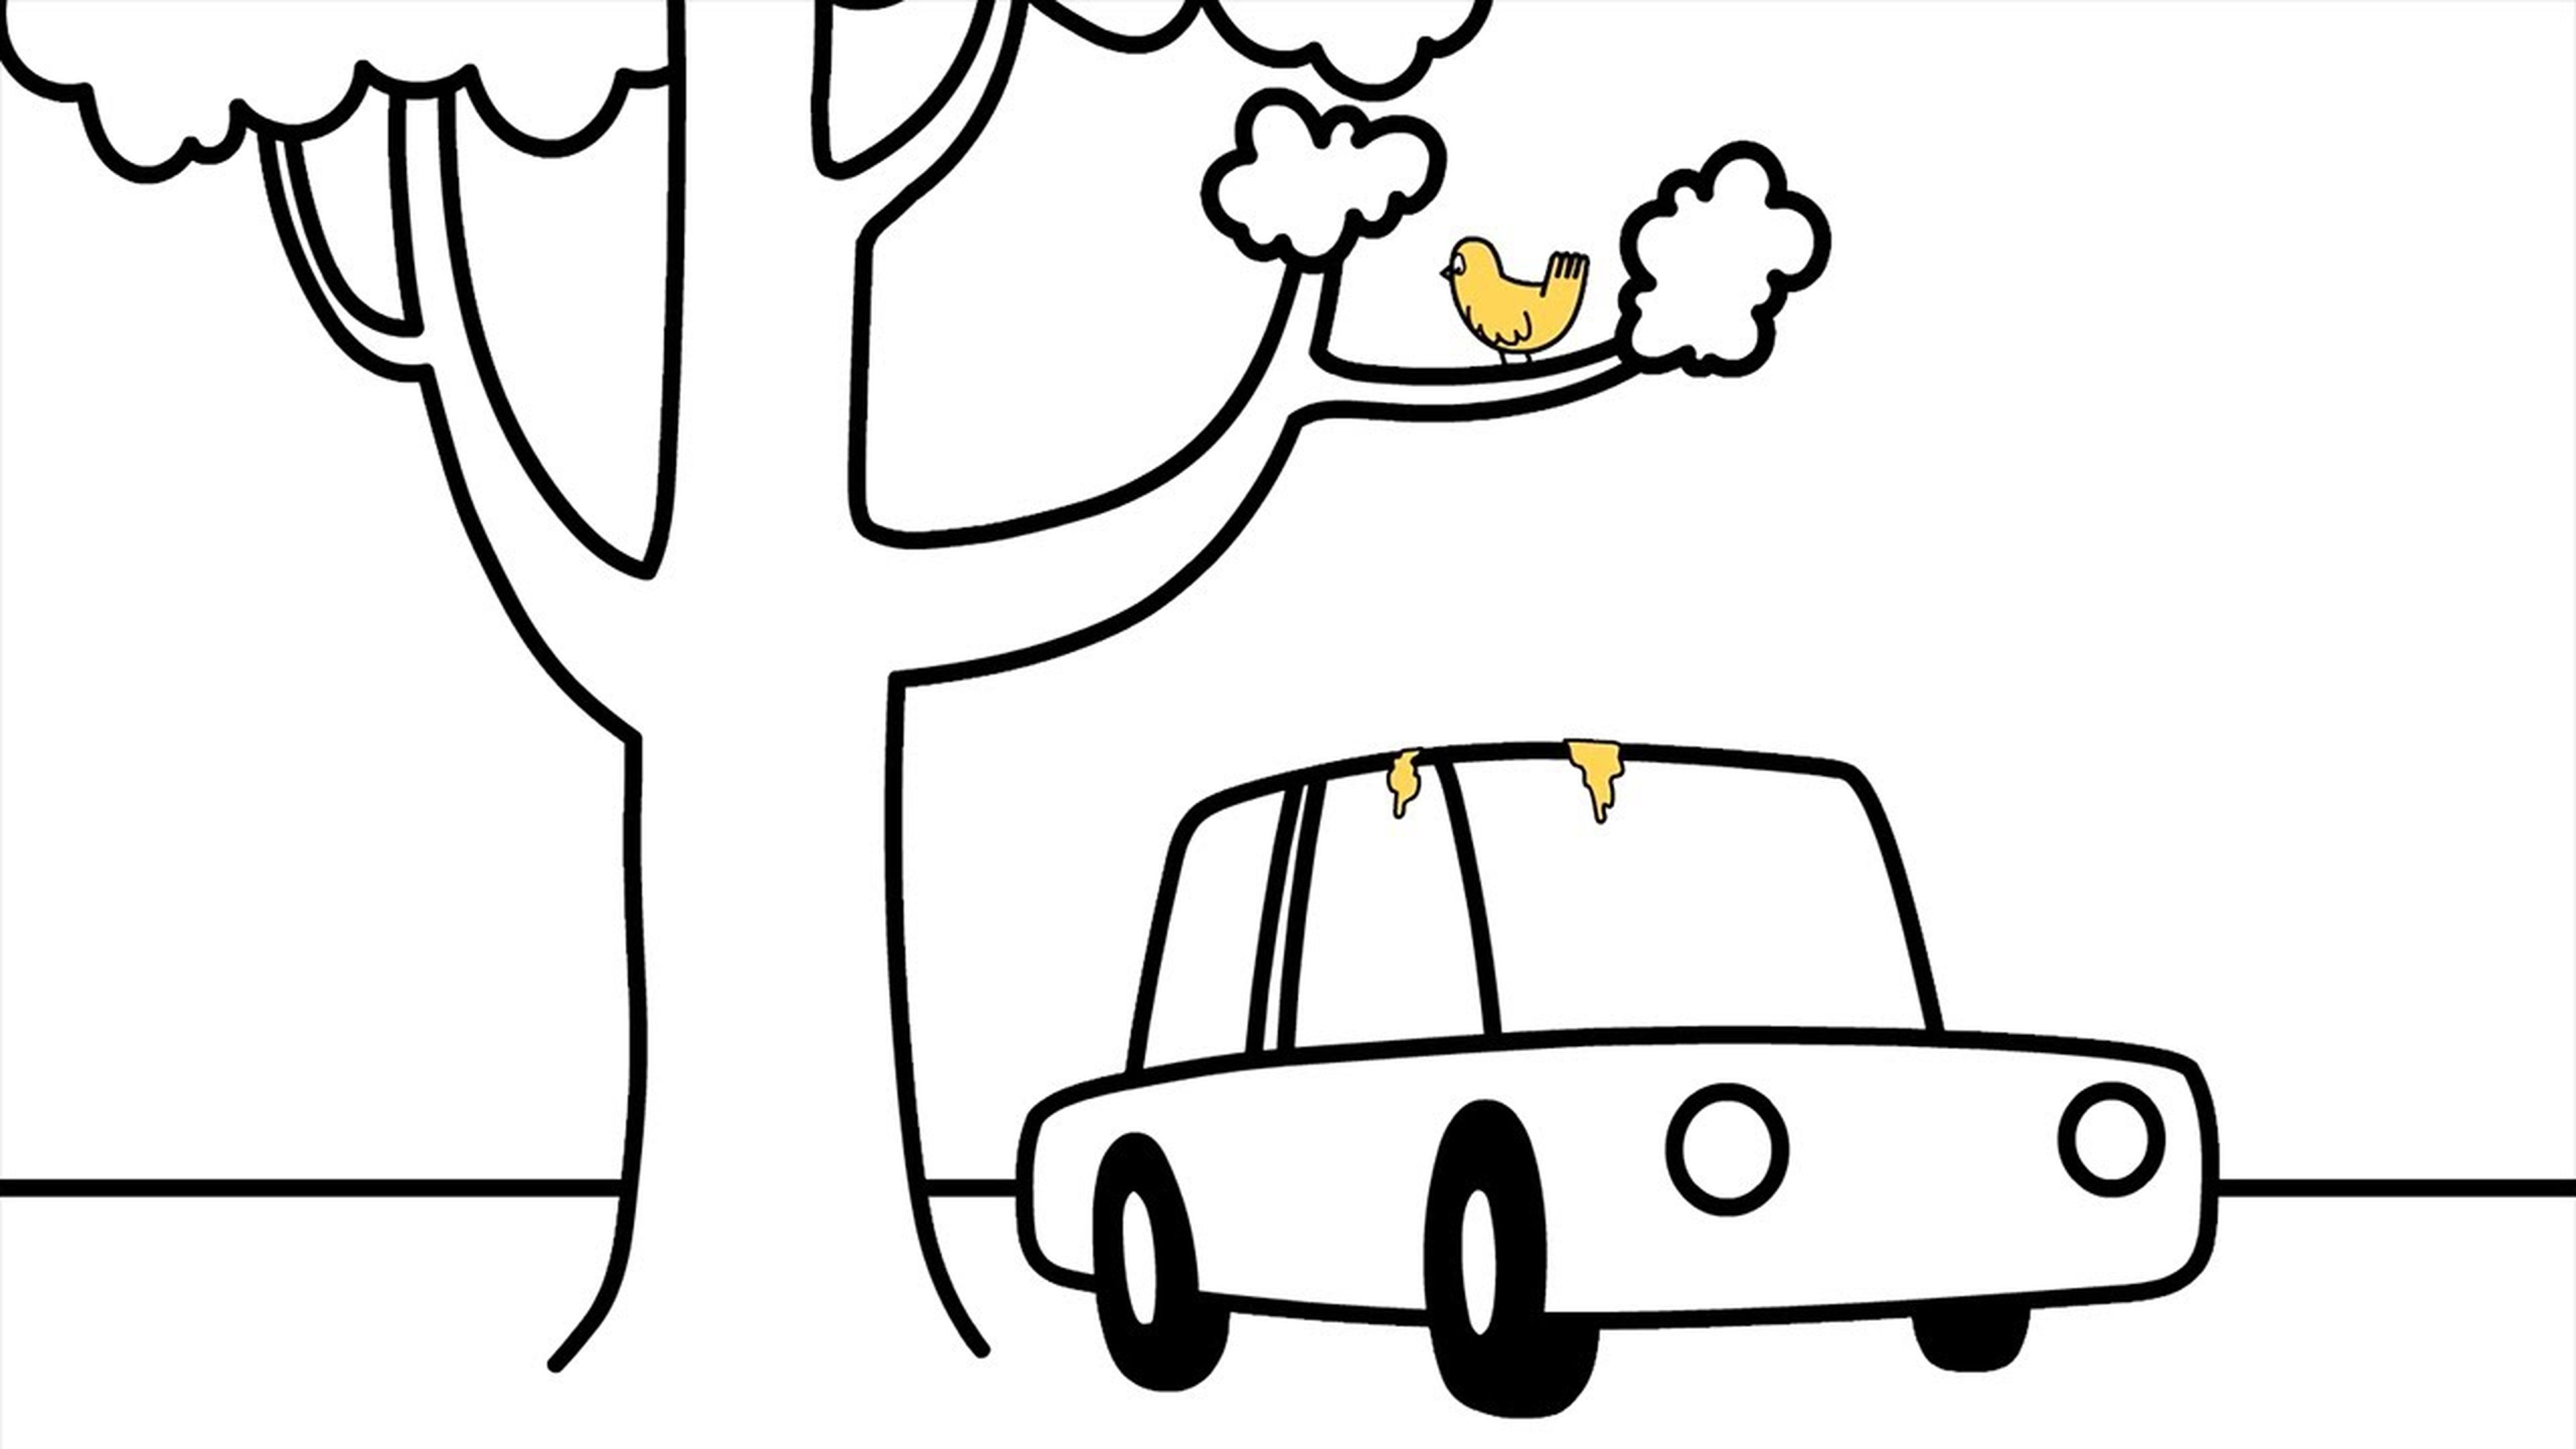 Ford Versus Bird Poop